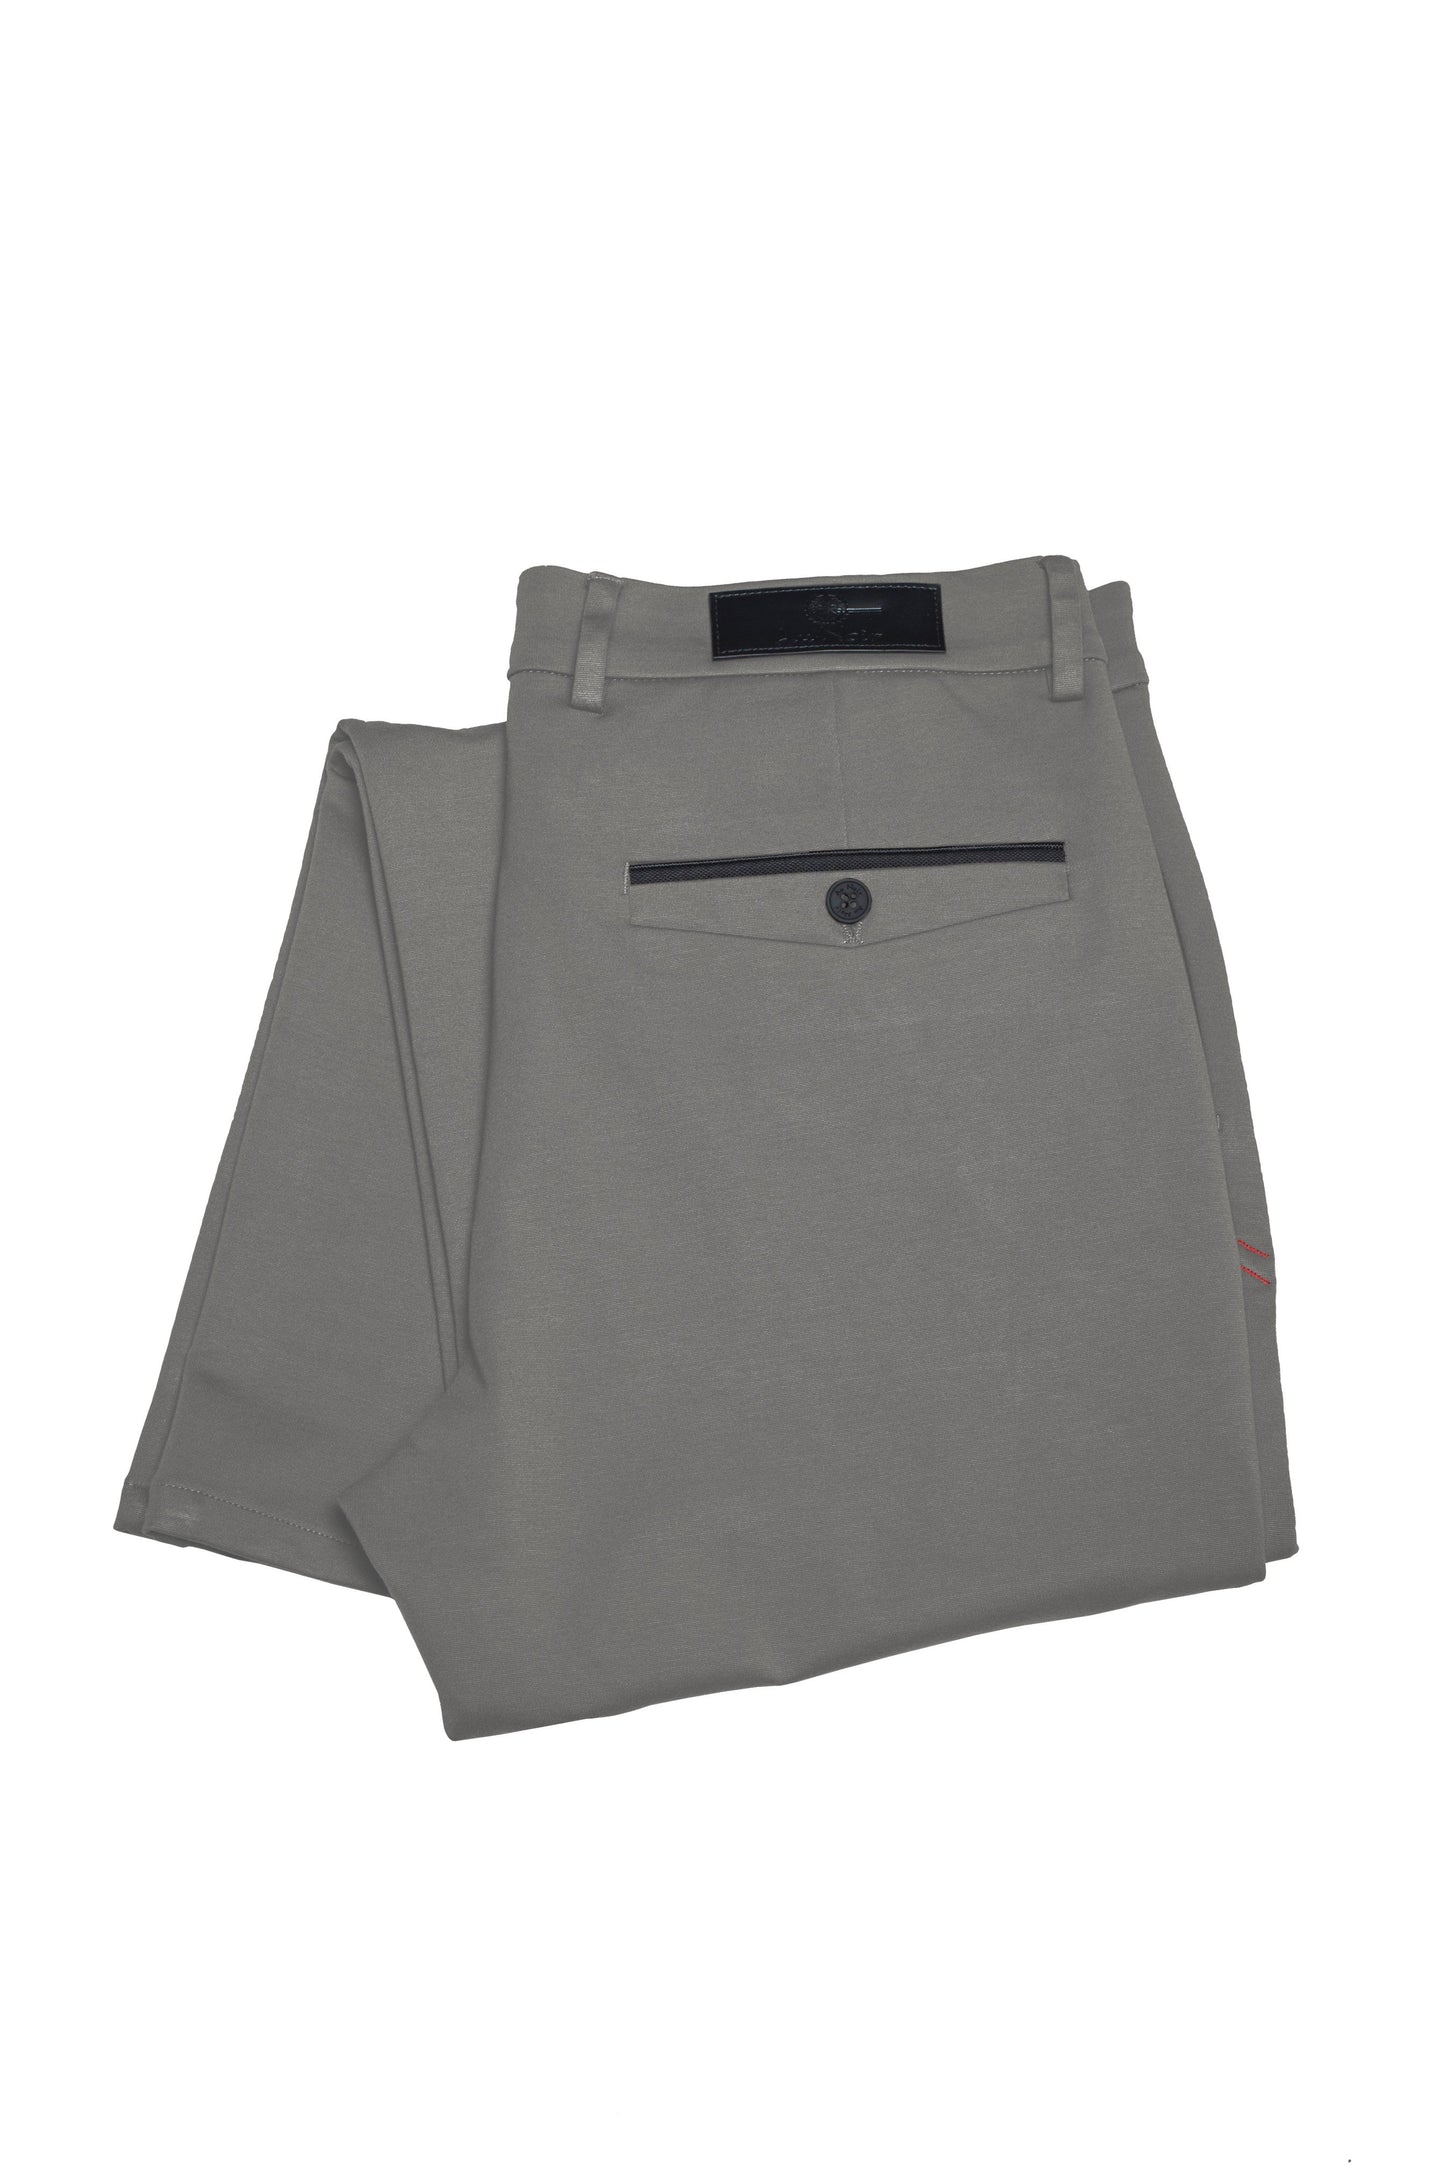 Pantalon Au Noir de couleur light grey